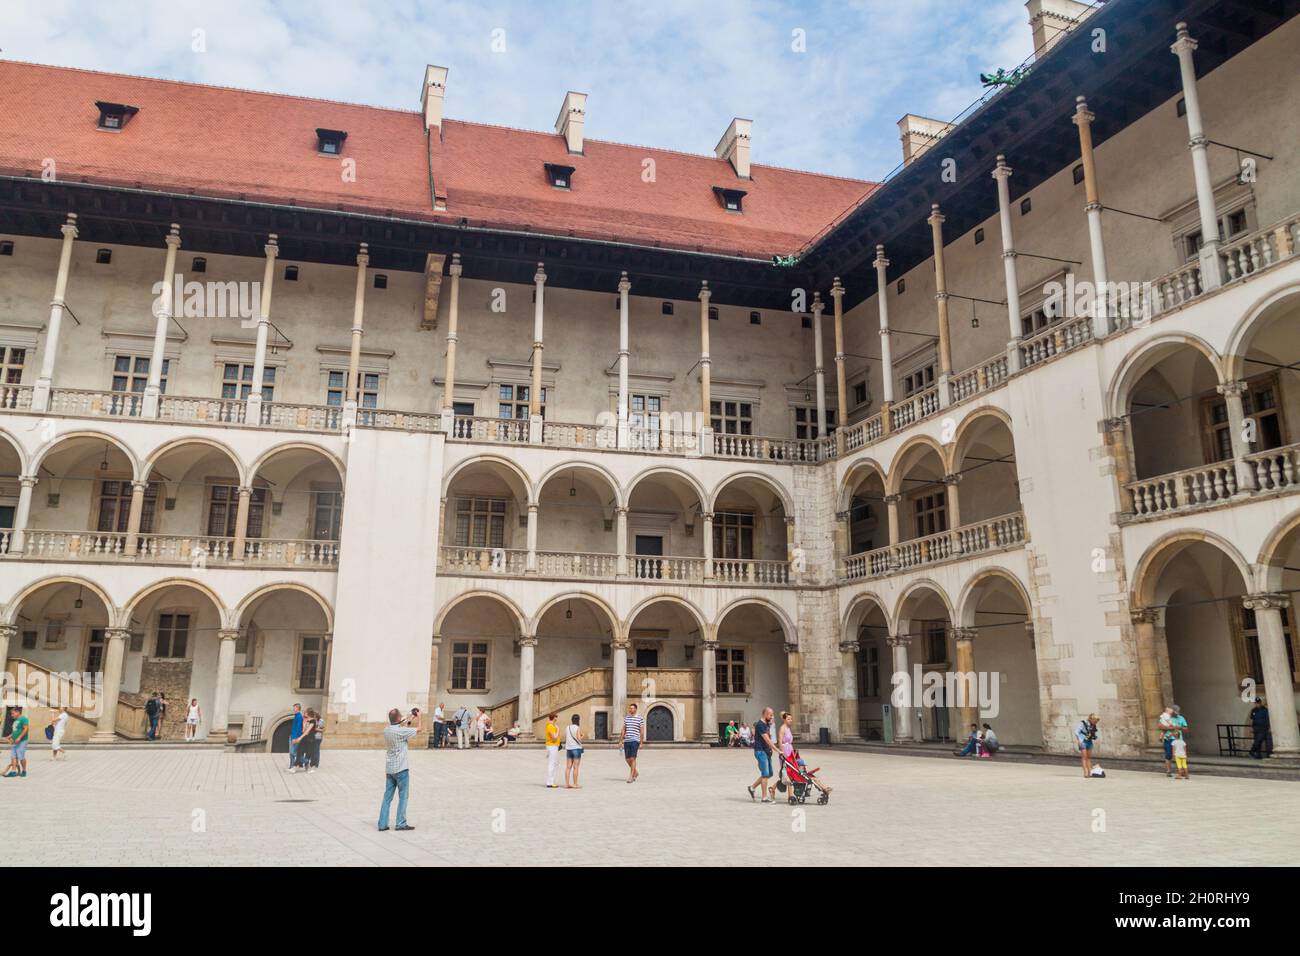 CRACOVIA, POLONIA - 3 SETTEMBRE 2016: I turisti visitano un cortile del castello di Wawel a Cracovia, Polonia Foto Stock